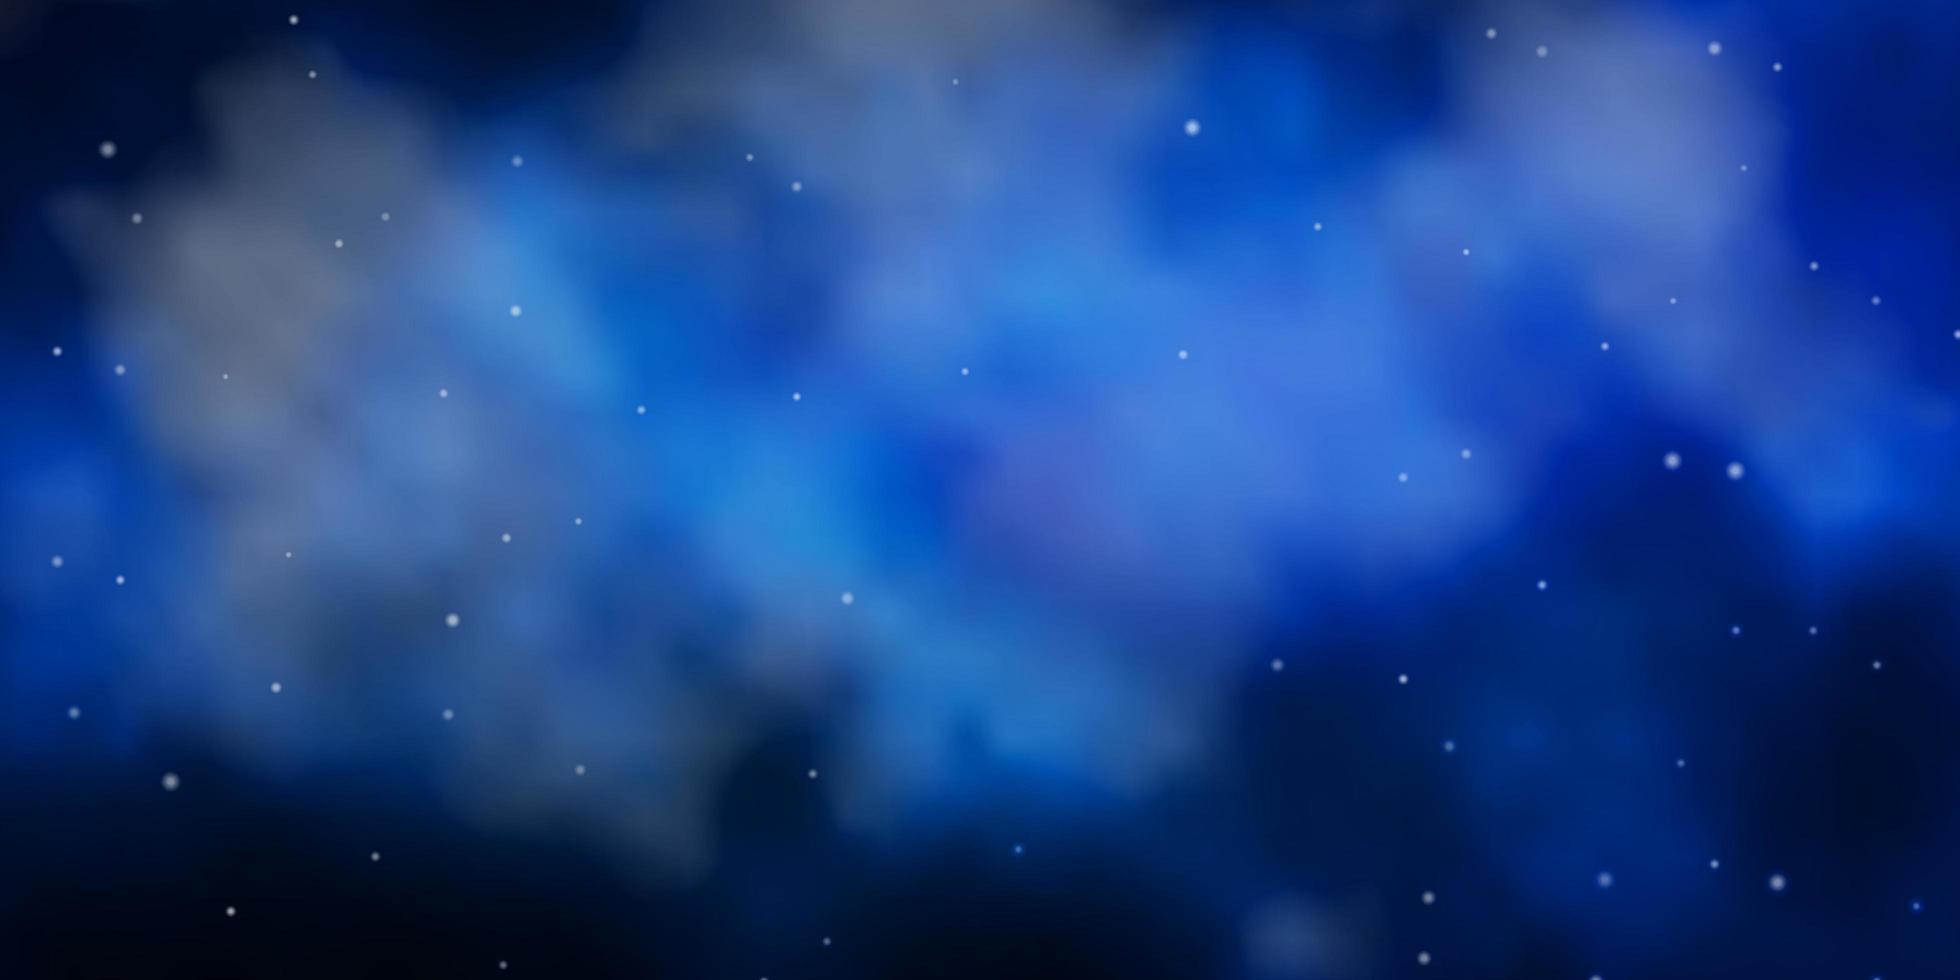 padrão de vetor azul escuro com estrelas abstratas. ilustração colorida brilhante com estrelas pequenas e grandes. padrão para embrulhar presentes.